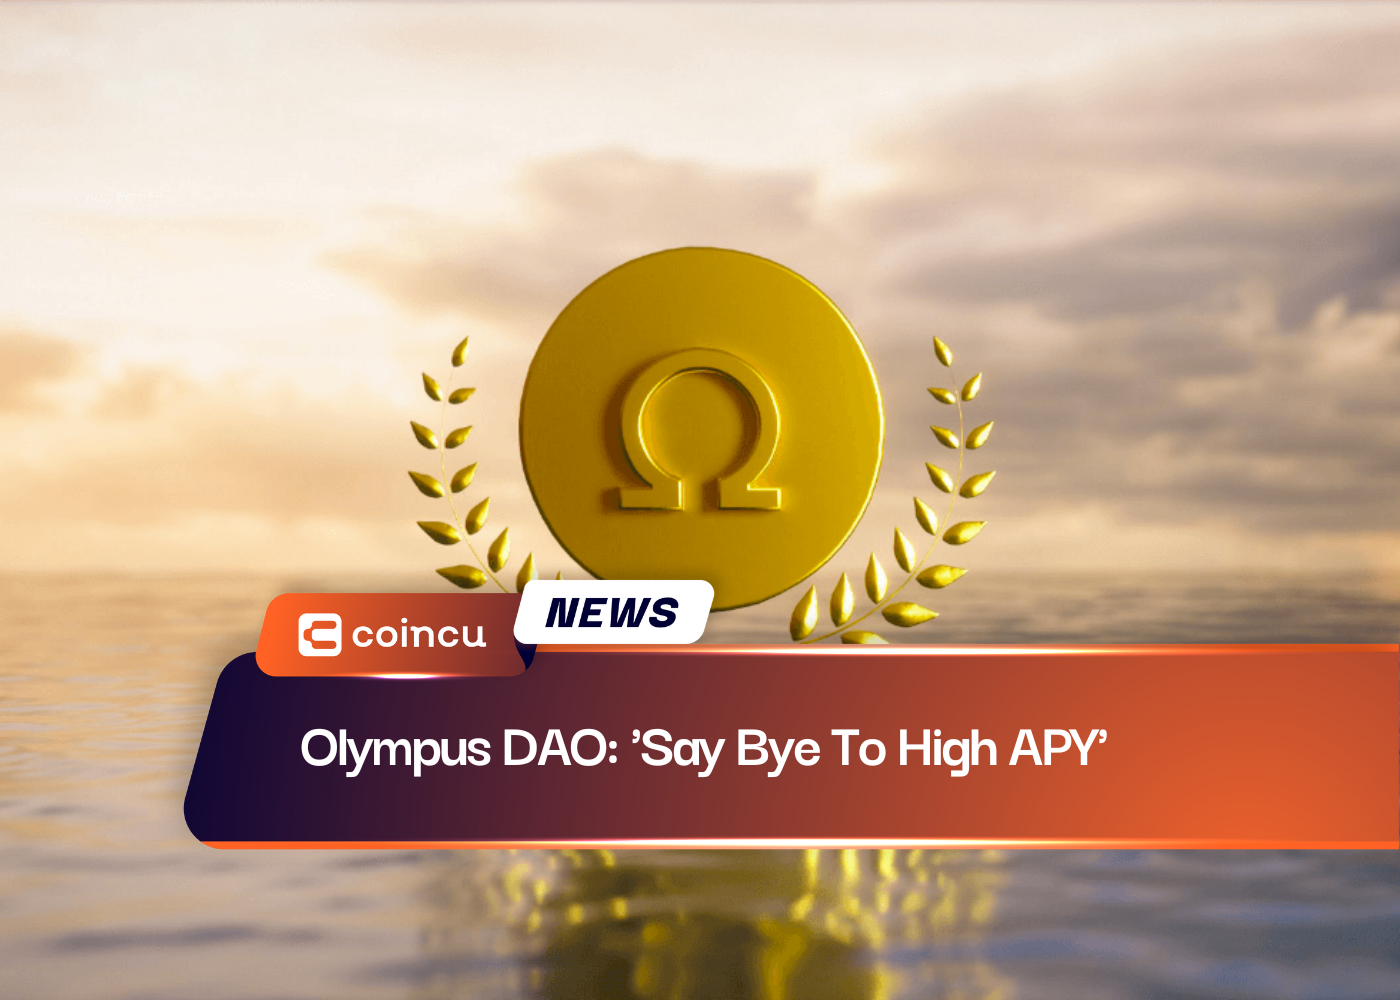 Olympus DAO: ‘Diga adeus ao alto APY’